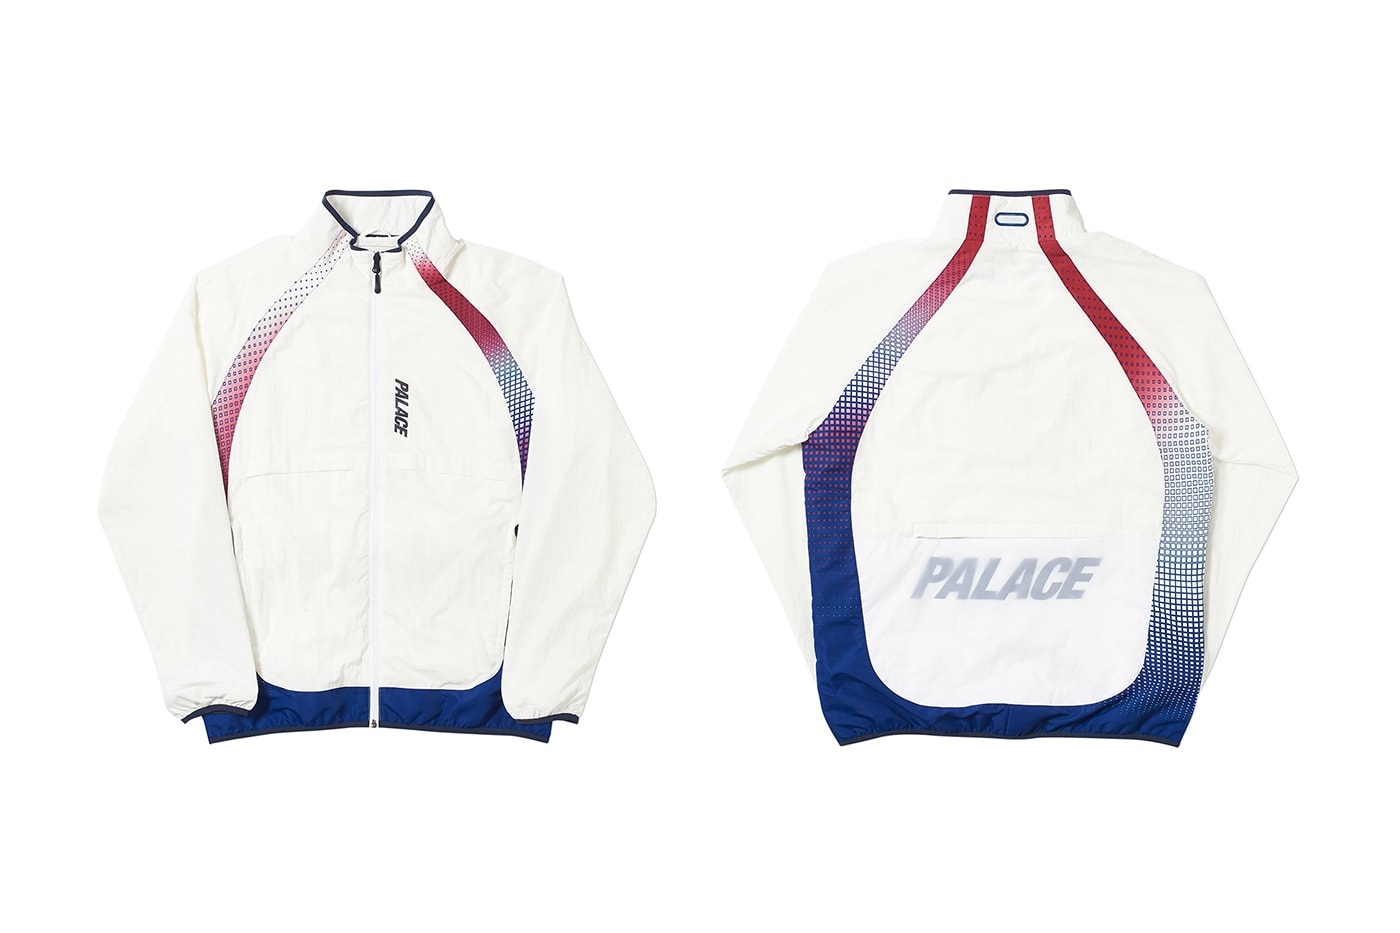 Palace 2019 夏季運動服系列